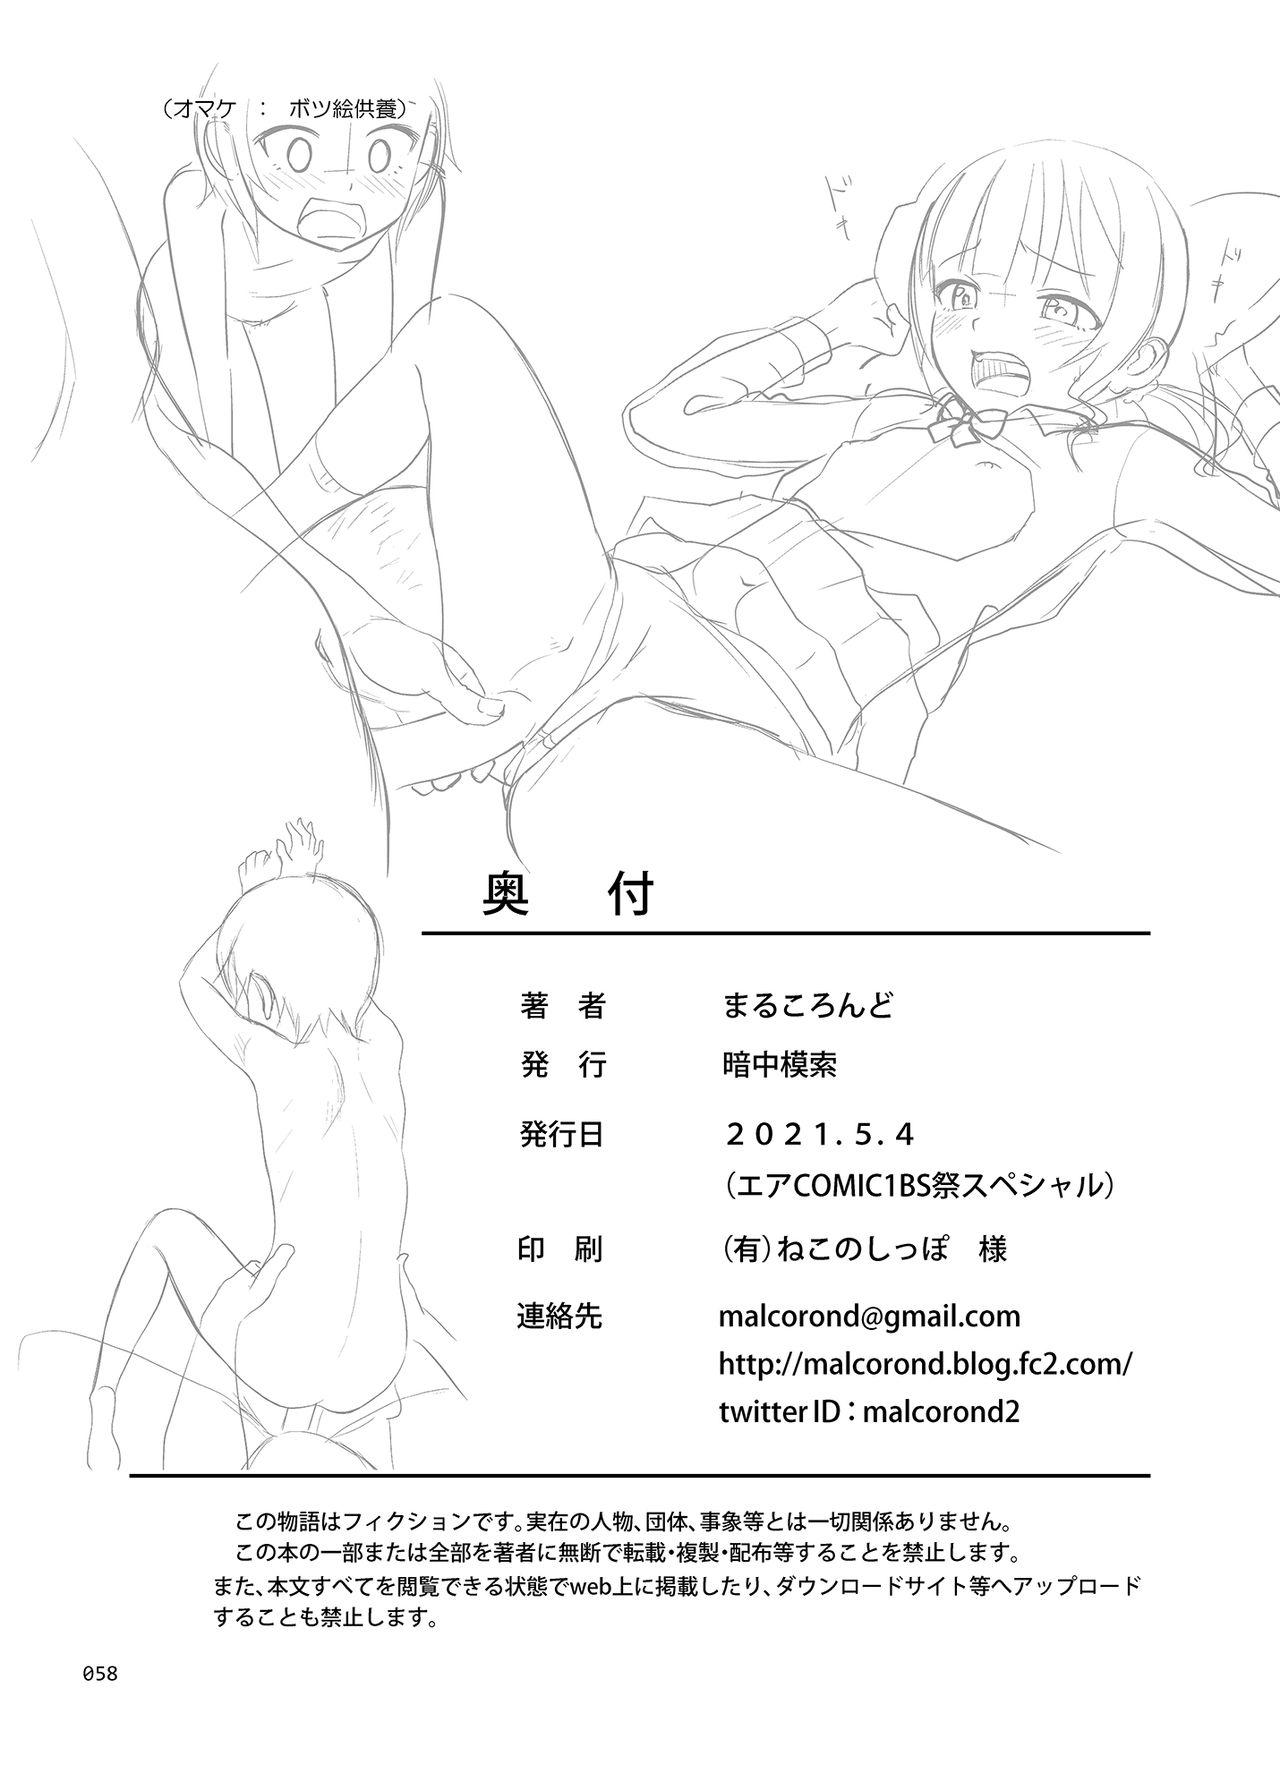 Concha Seishidouin no Oshigoto 2 Naka ga yosa soudatta node futari matomete hojikutte ageta - Original Nylons - Page 57